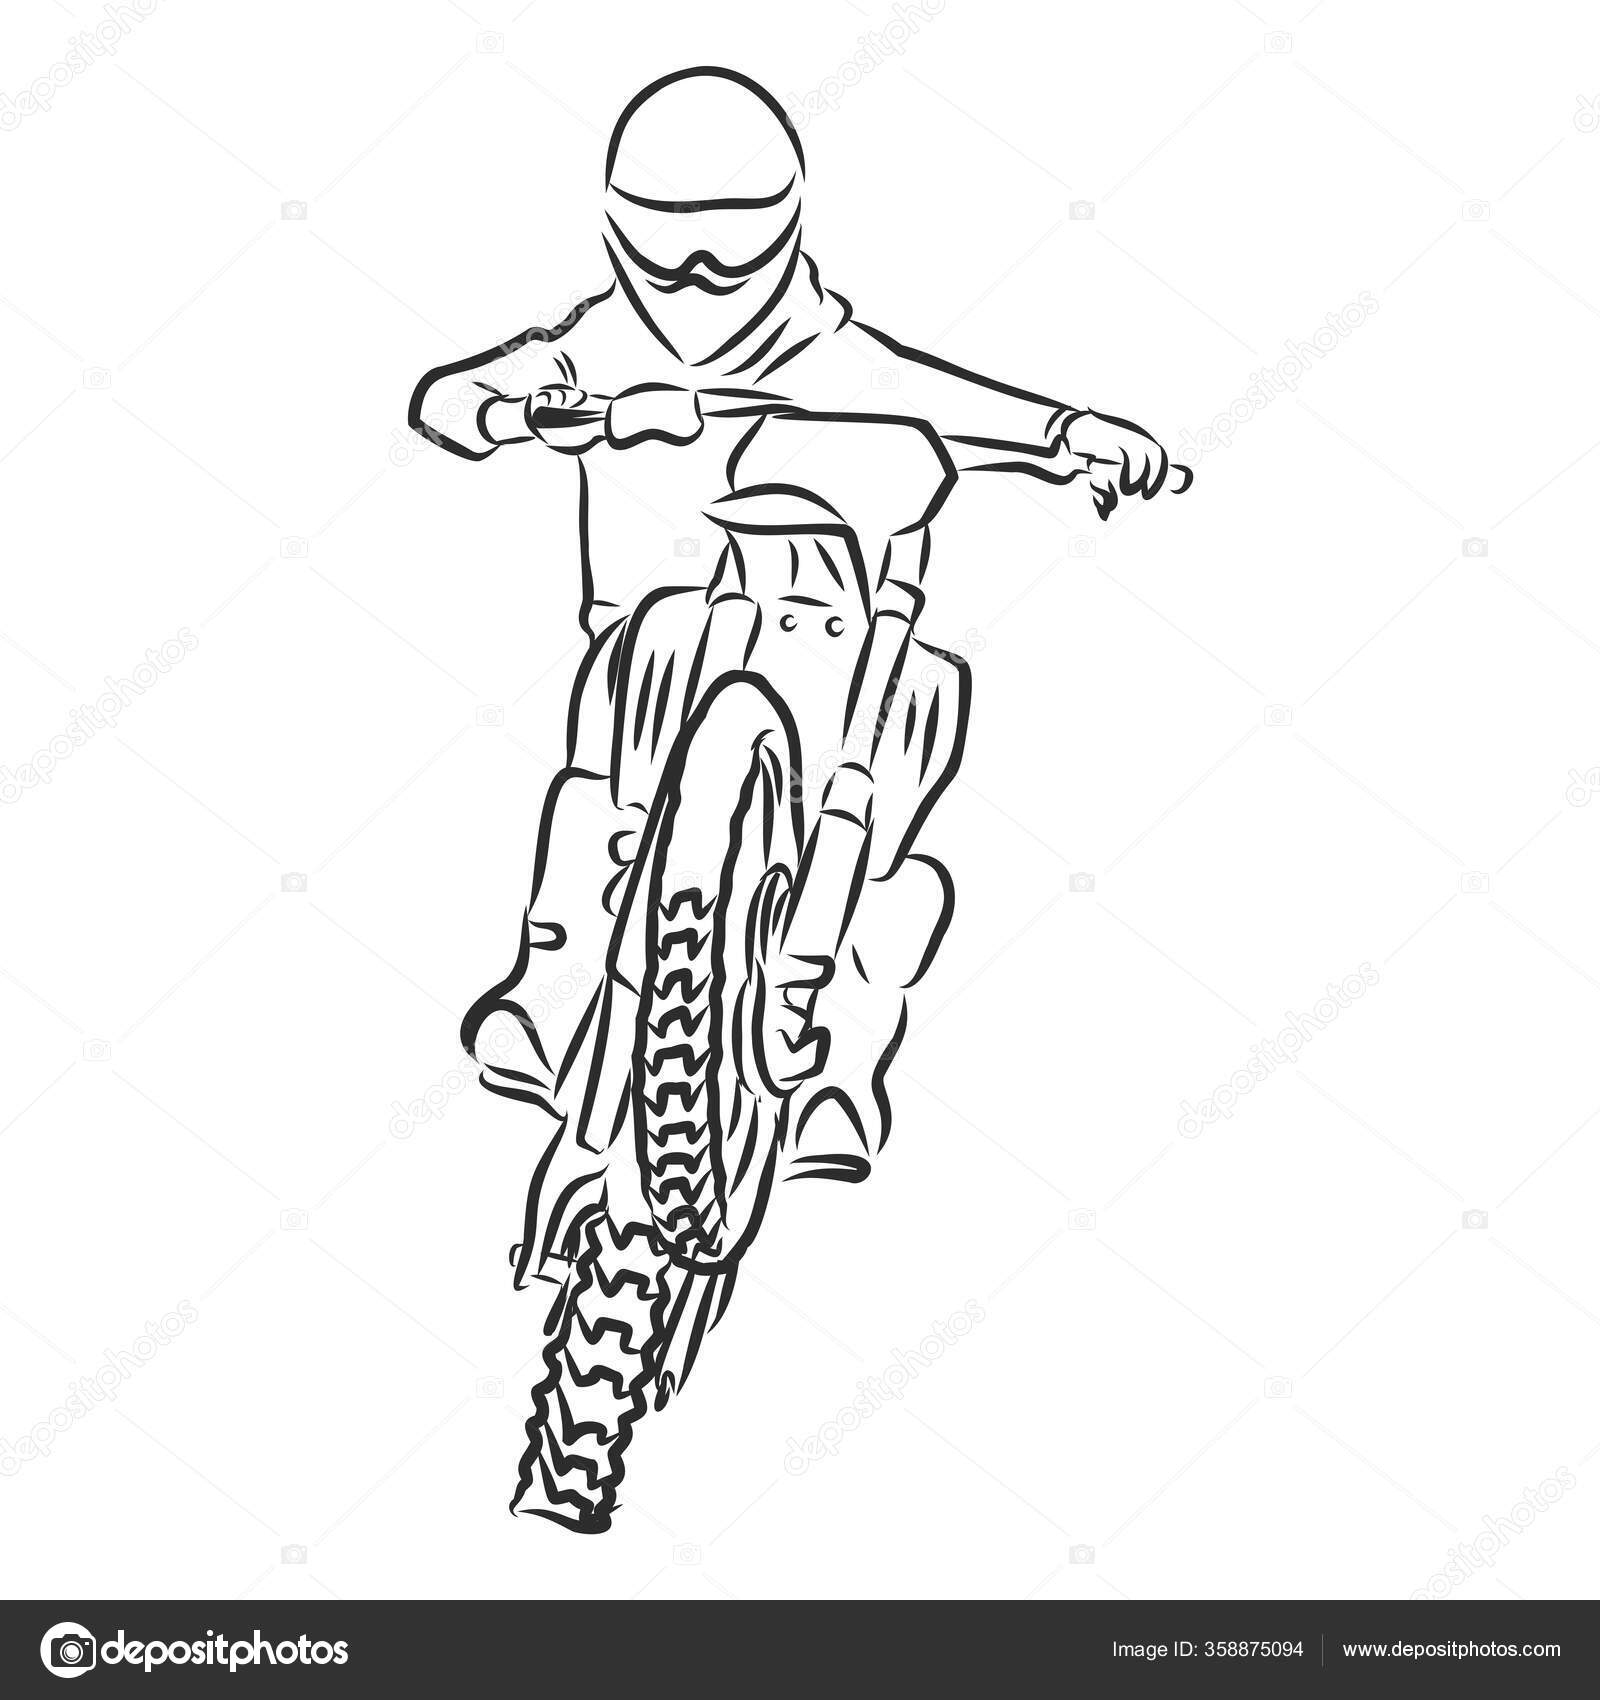 Moto desenhado à mão esboço doodle ícone . vetor(es) de stock de  ©VisualGeneration 208527008